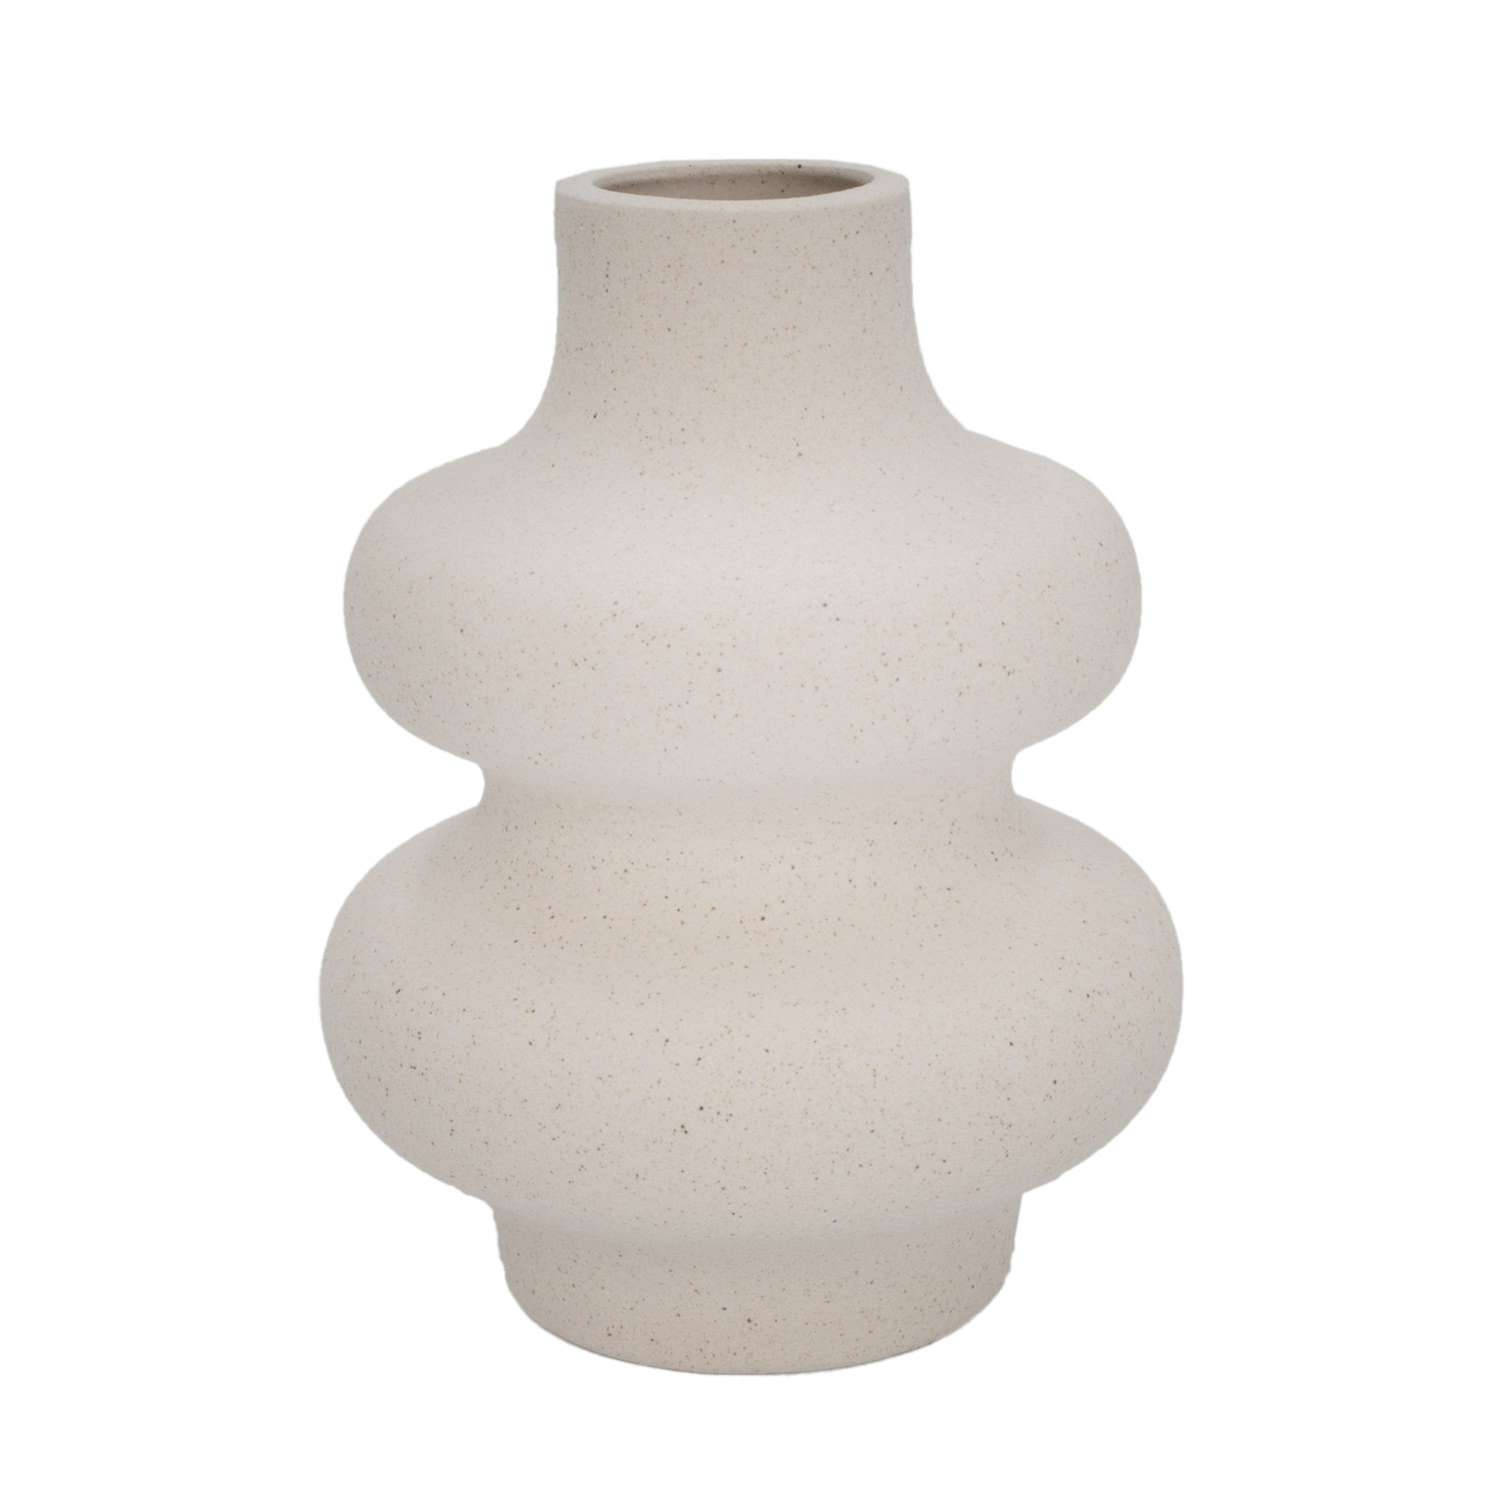 Intirilife Keramische Vaas in Wit - 12 x 15.5 cm - Spiraalvaas, decoratieve vaas, ideaal voor bloemen, pampasgras en gedroogde bloemen